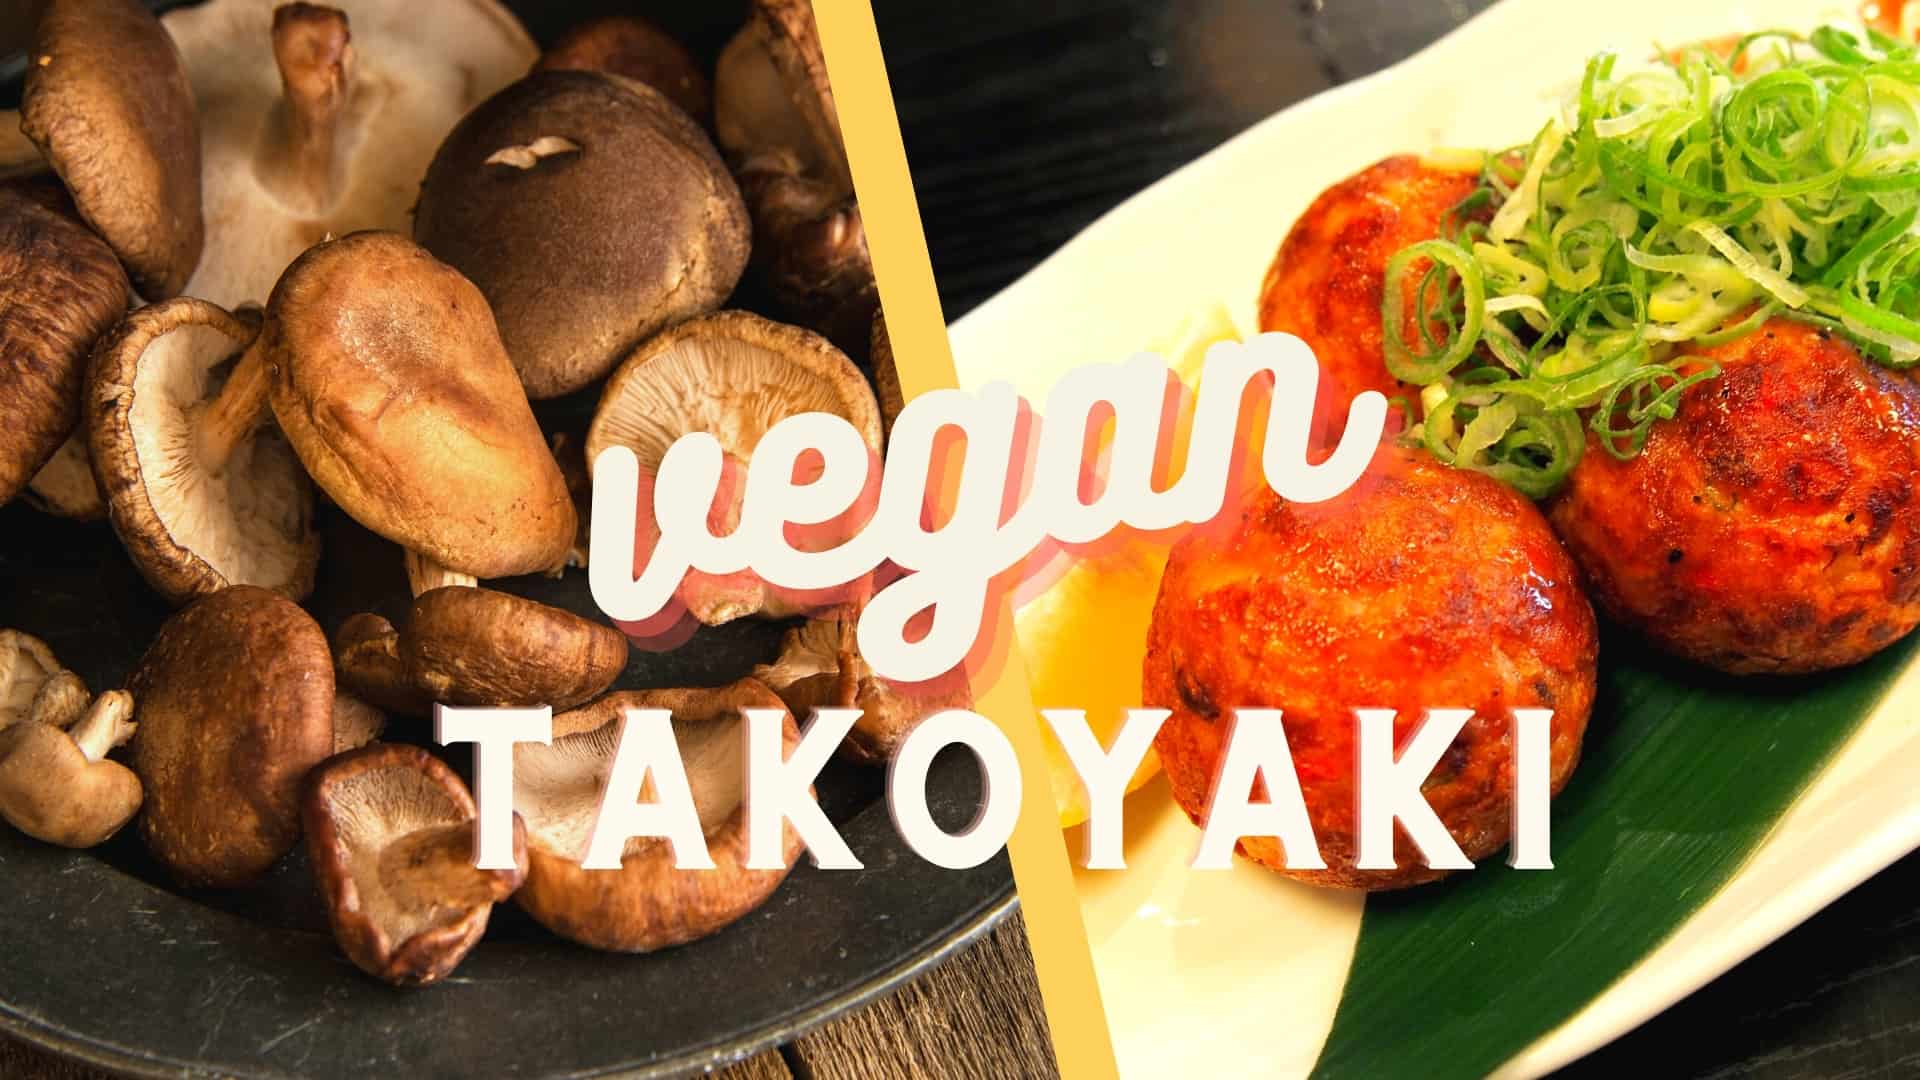 vegansk takoyaki